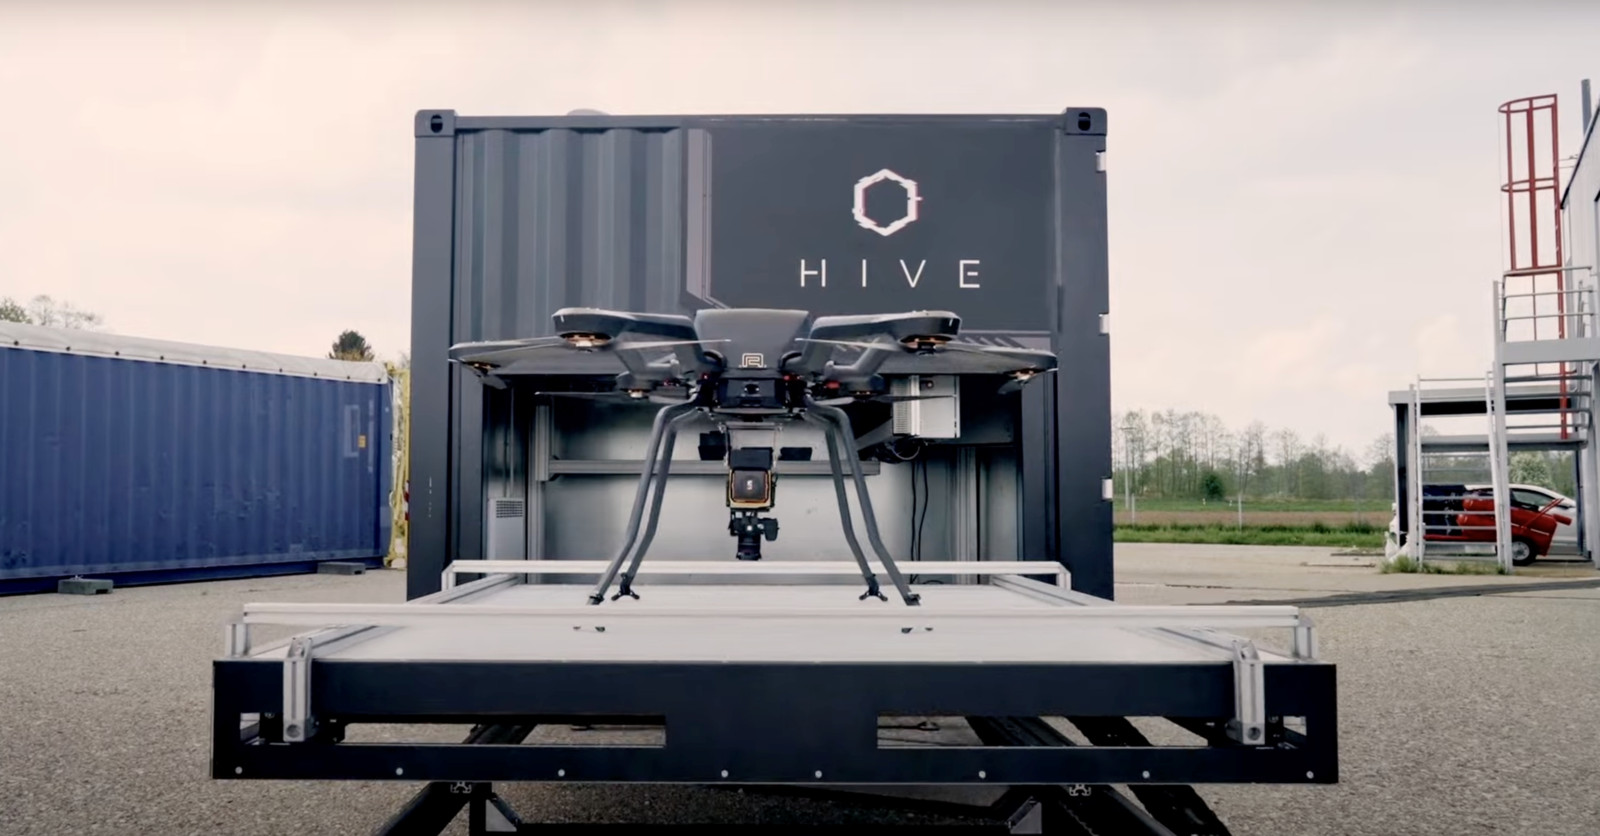 Hive hat ein innovatives All-In-One Drohnensystem speziell für den Einsatz im Industrie-Umfeld entwickelt – auch in Sachen Brandschutz kann es sich als nützlich erweisen.